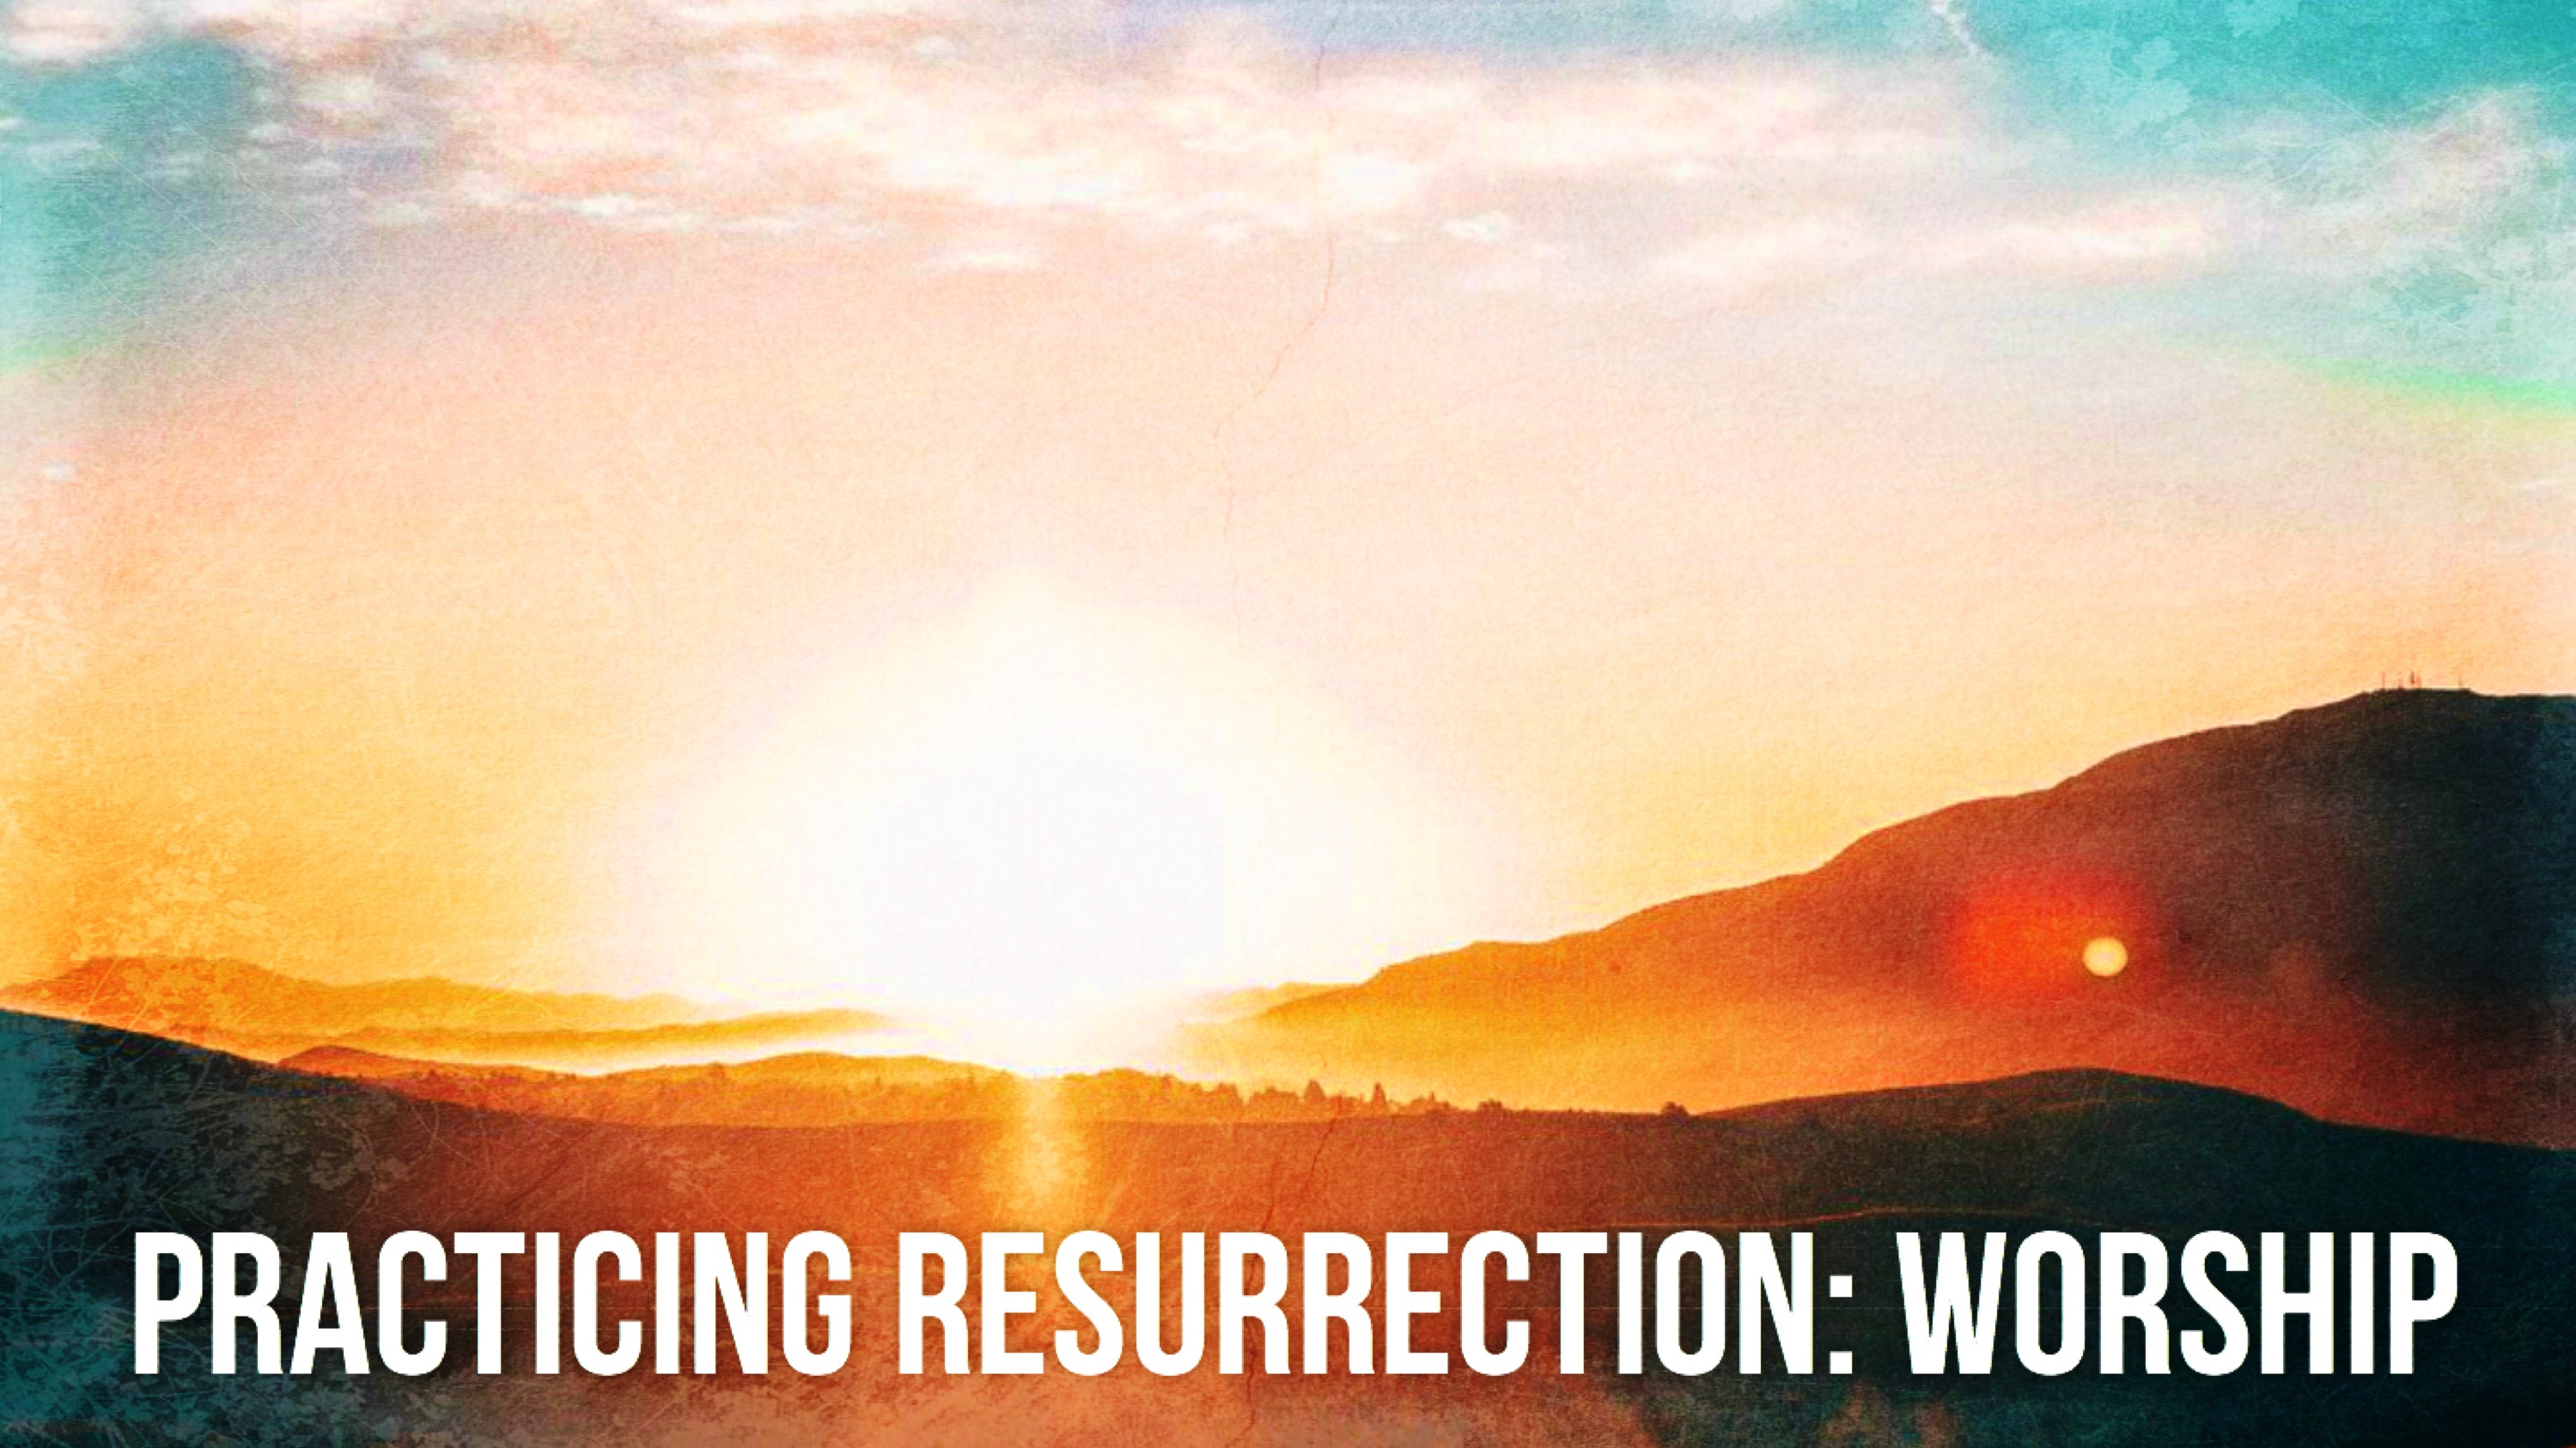 Ryan Post - "Practicing Resurrection: Worship"